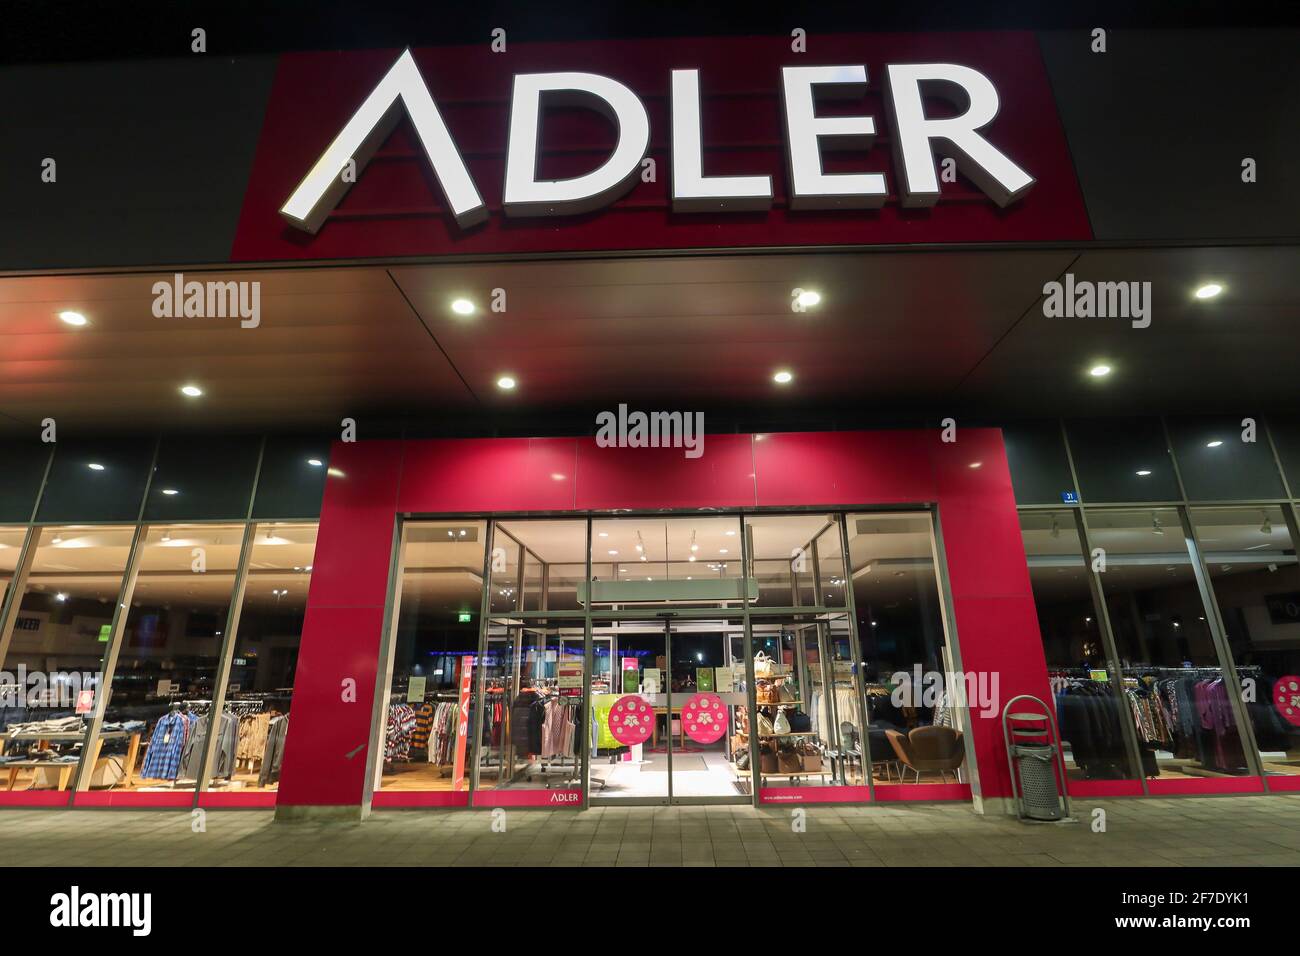 MONACO BAVIERA GERMANIA - GEN 13: Vetrina del negozio di moda Adler, richiesta di insolvenza a causa di arresto dovuto Coronavirus pandemia a Monaco, in tedesco Foto Stock